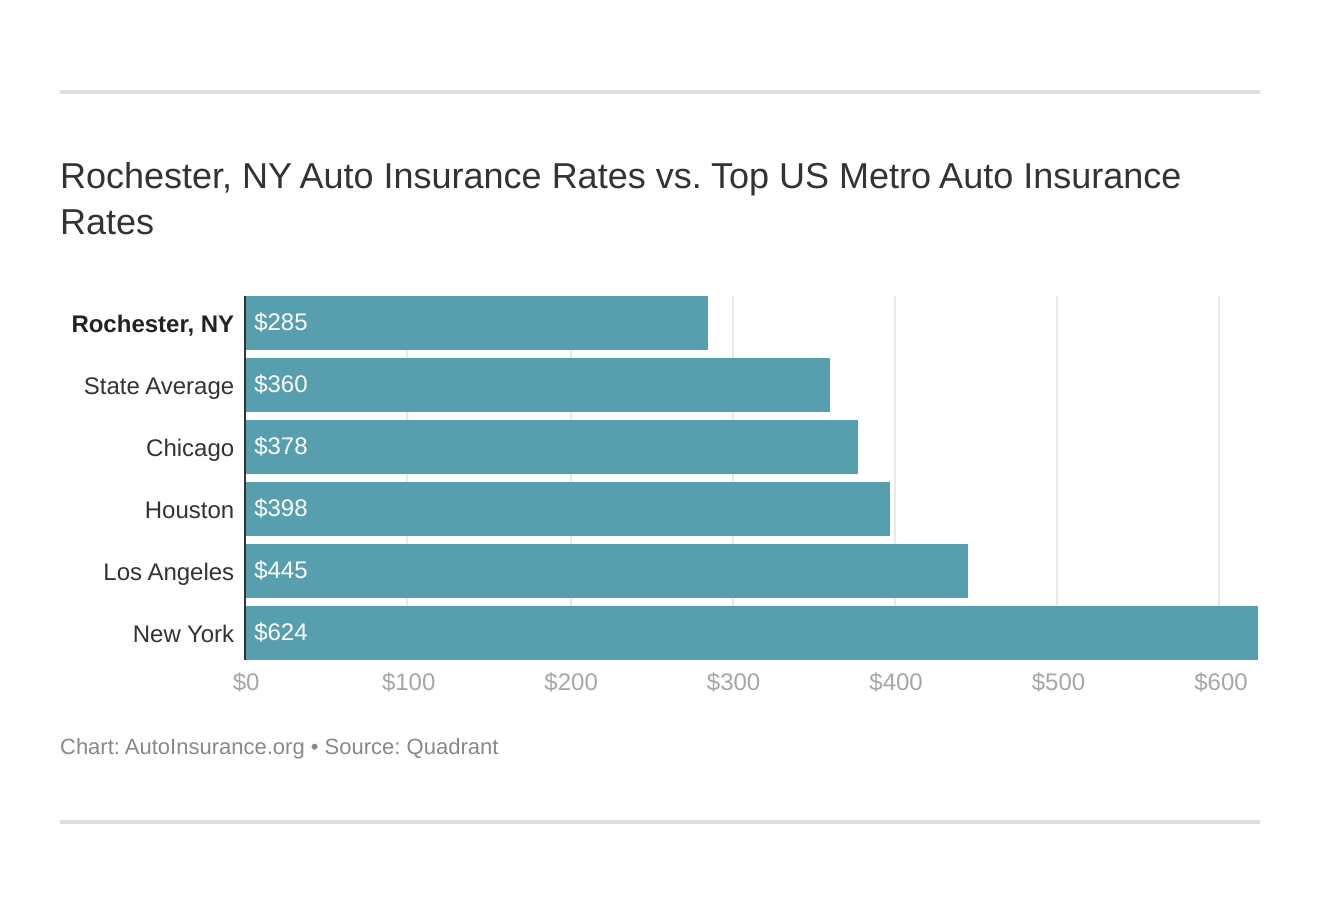 Rochester, NY Auto Insurance Rates vs. Top US Metro Auto Insurance Rates